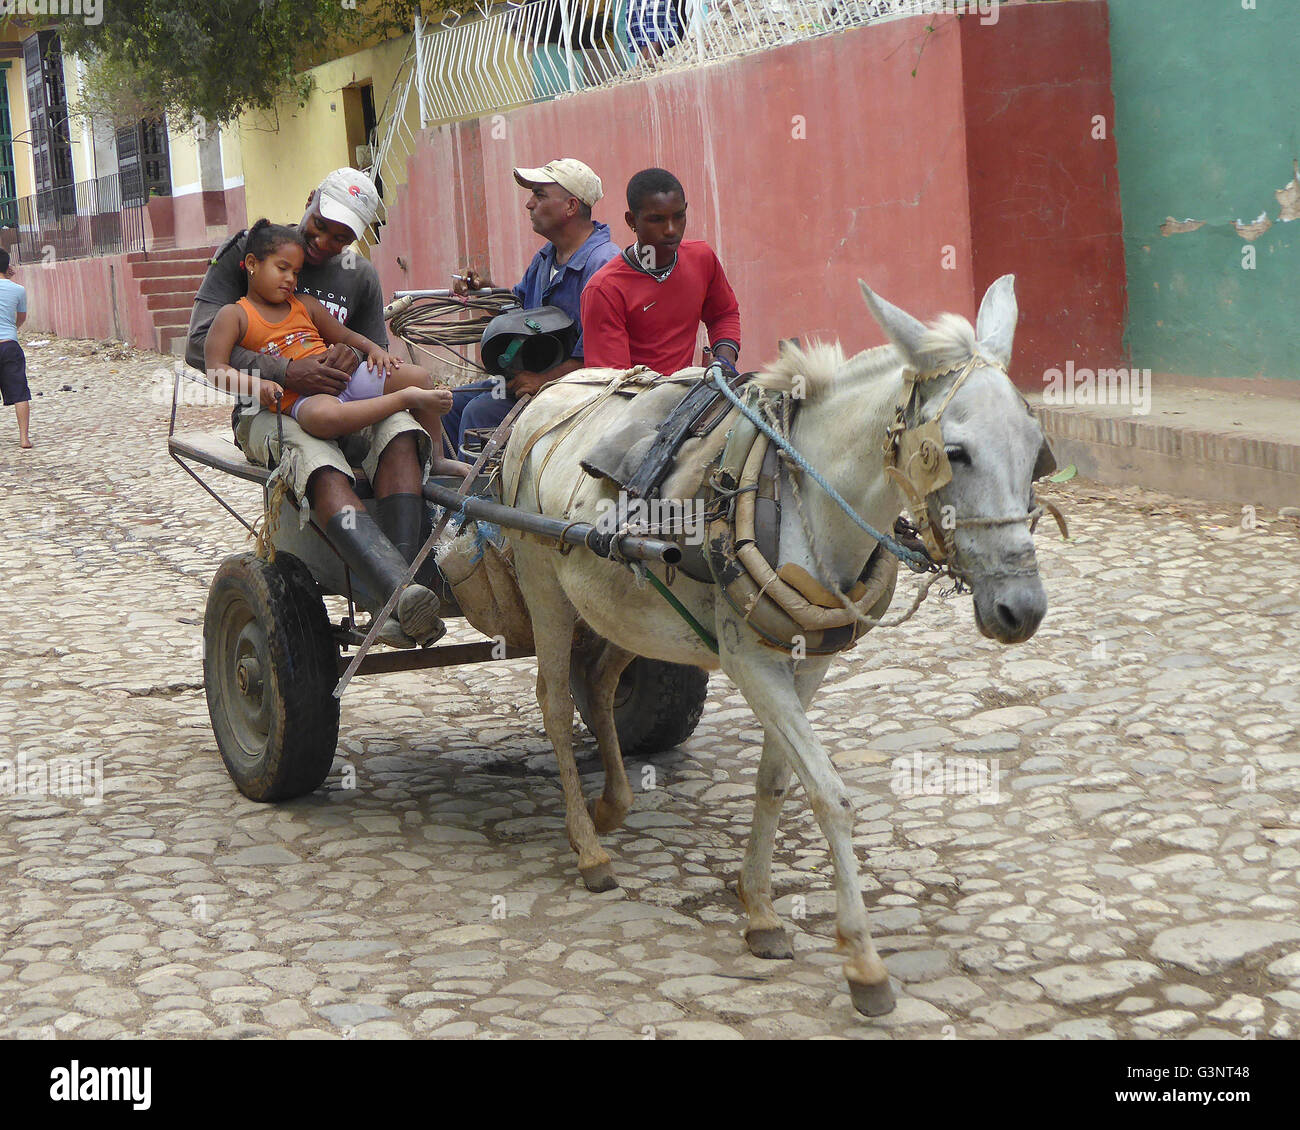 Trinidad Cuba 2015 transport de la famille à travers les rues pavées de Trinidad Banque D'Images